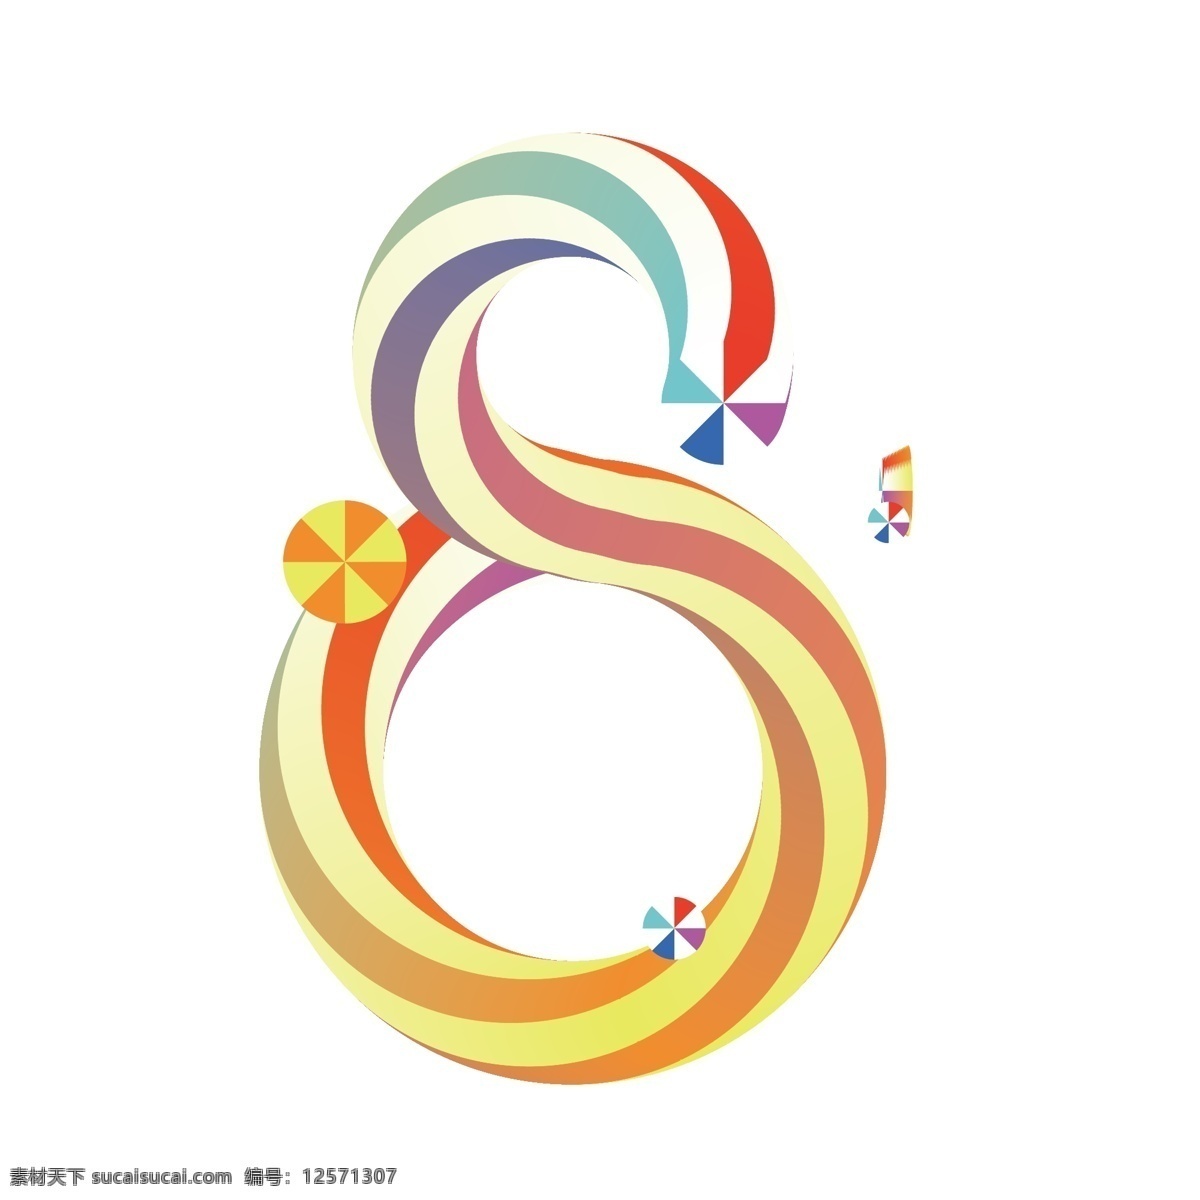 双十 倒计时 数字8 糖果字 字体设计 创意设计 彩虹字